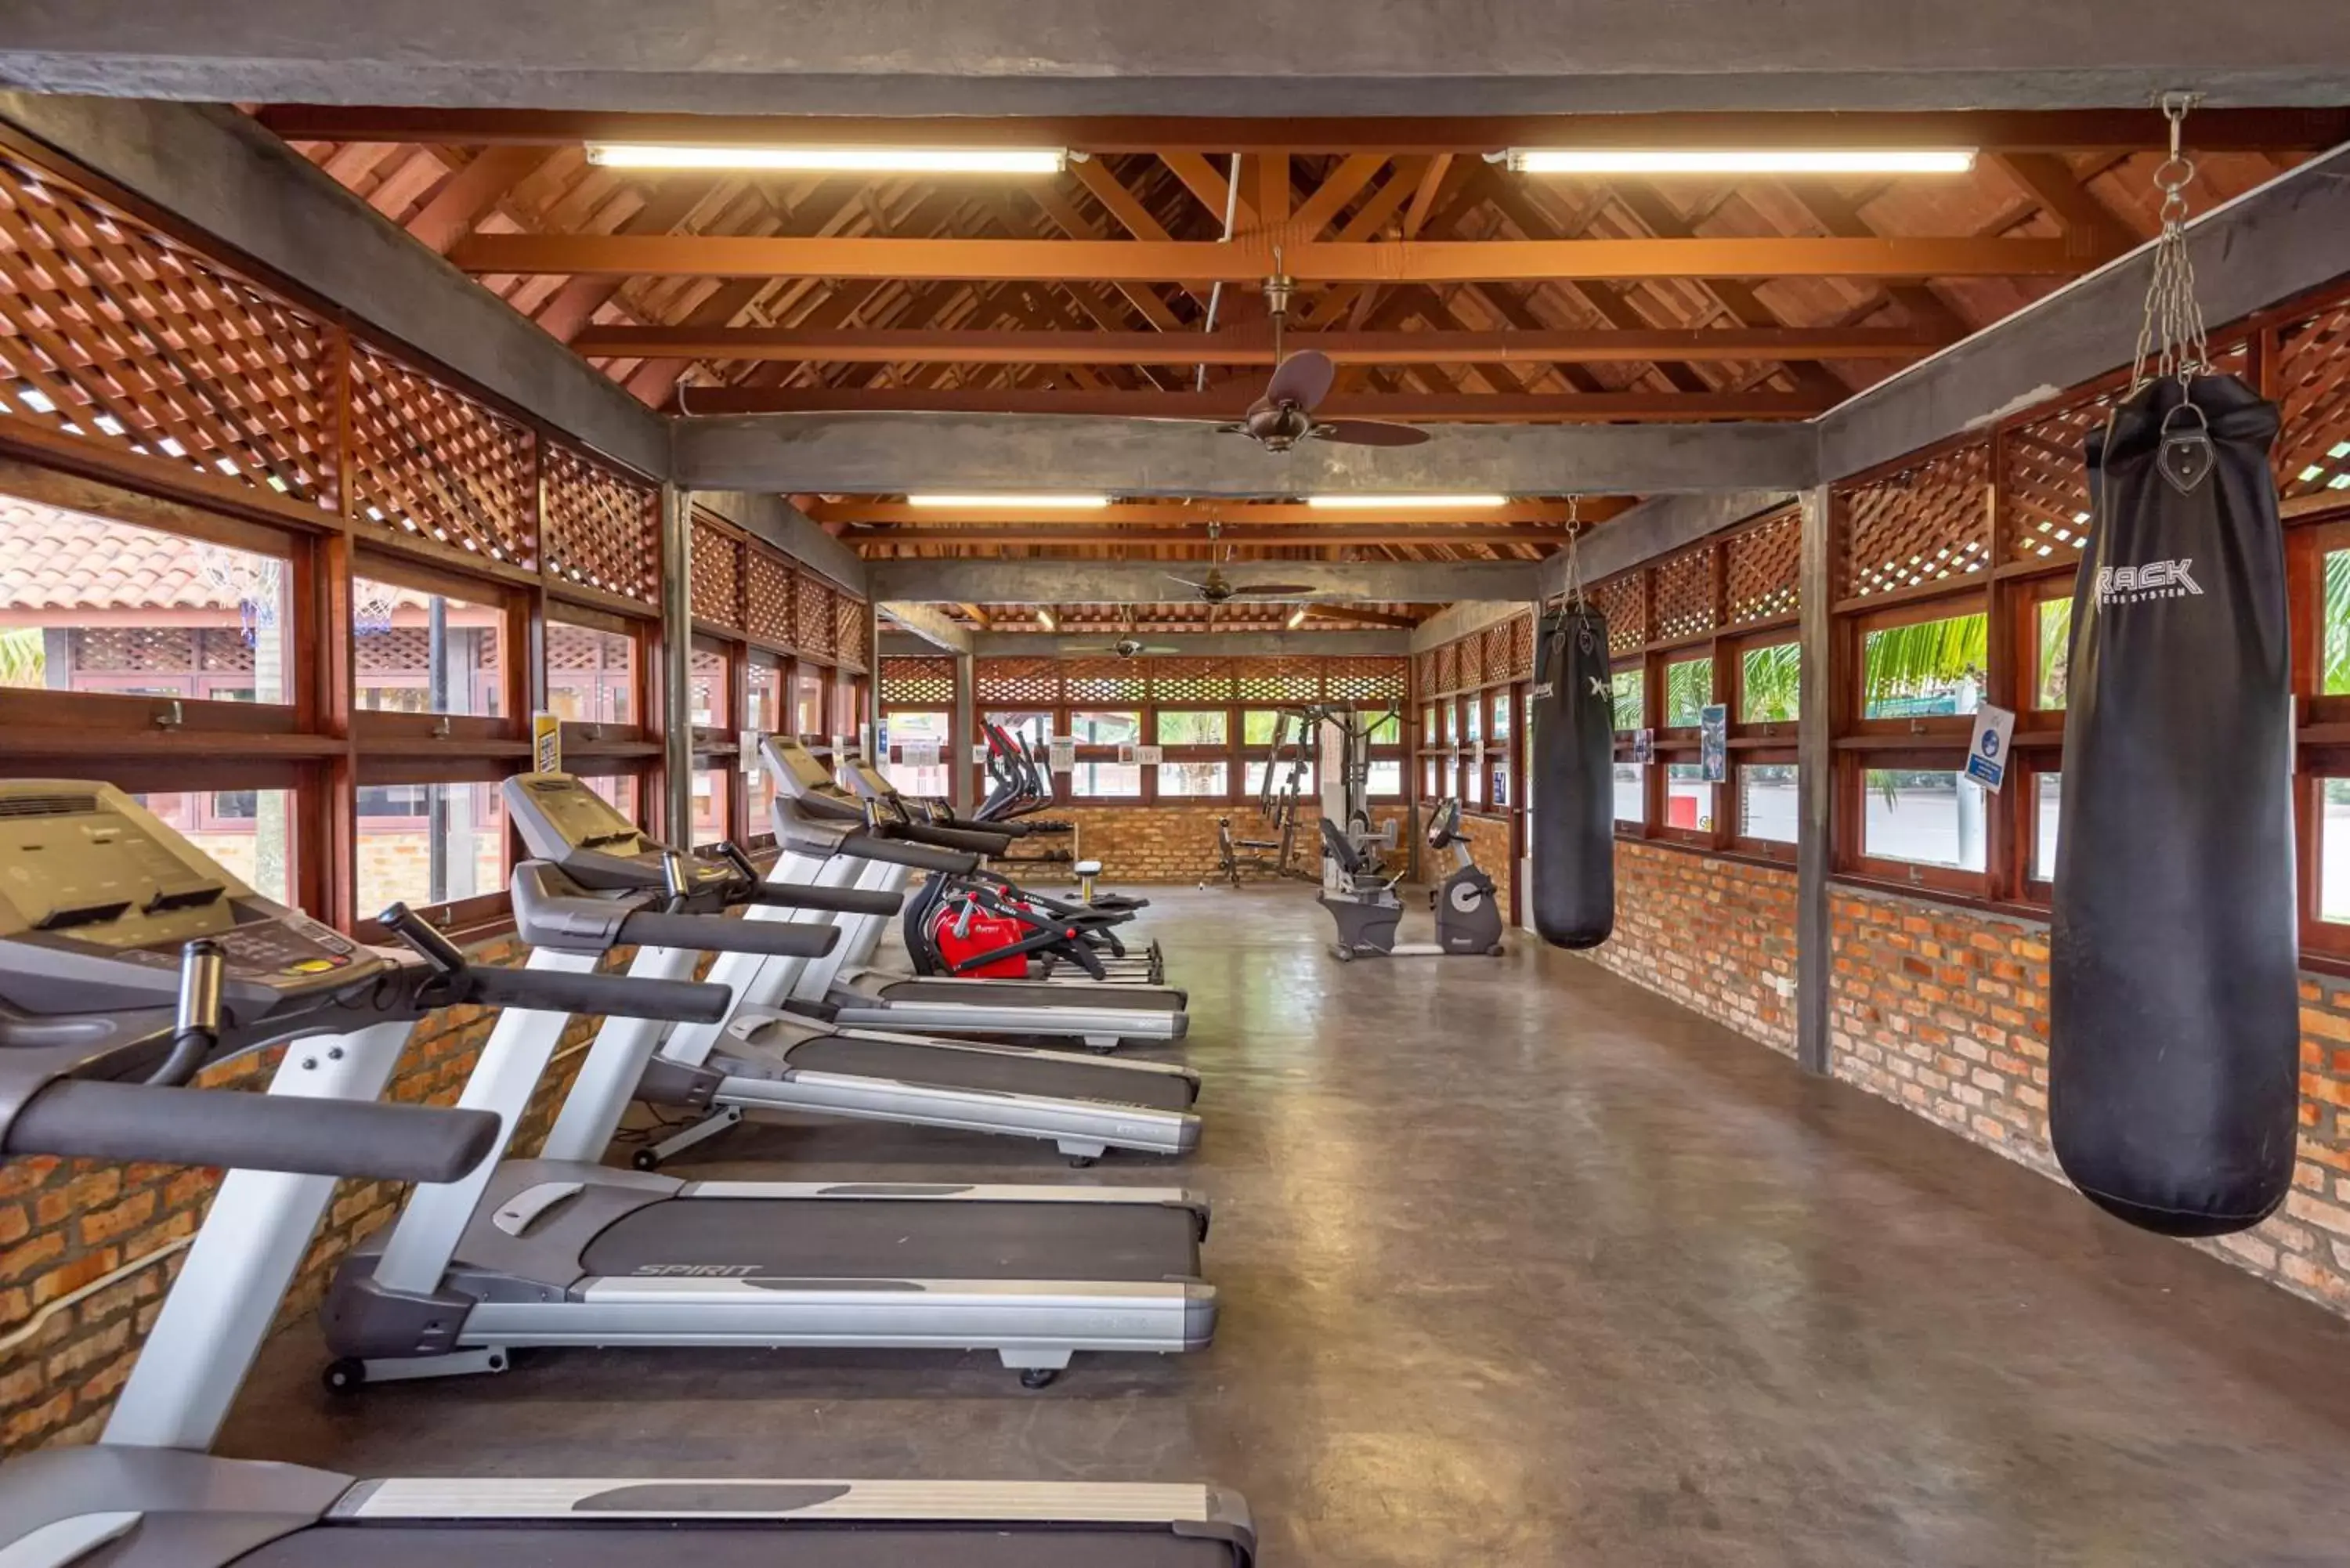 Fitness centre/facilities, Fitness Center/Facilities in Tasik Villa International Resort